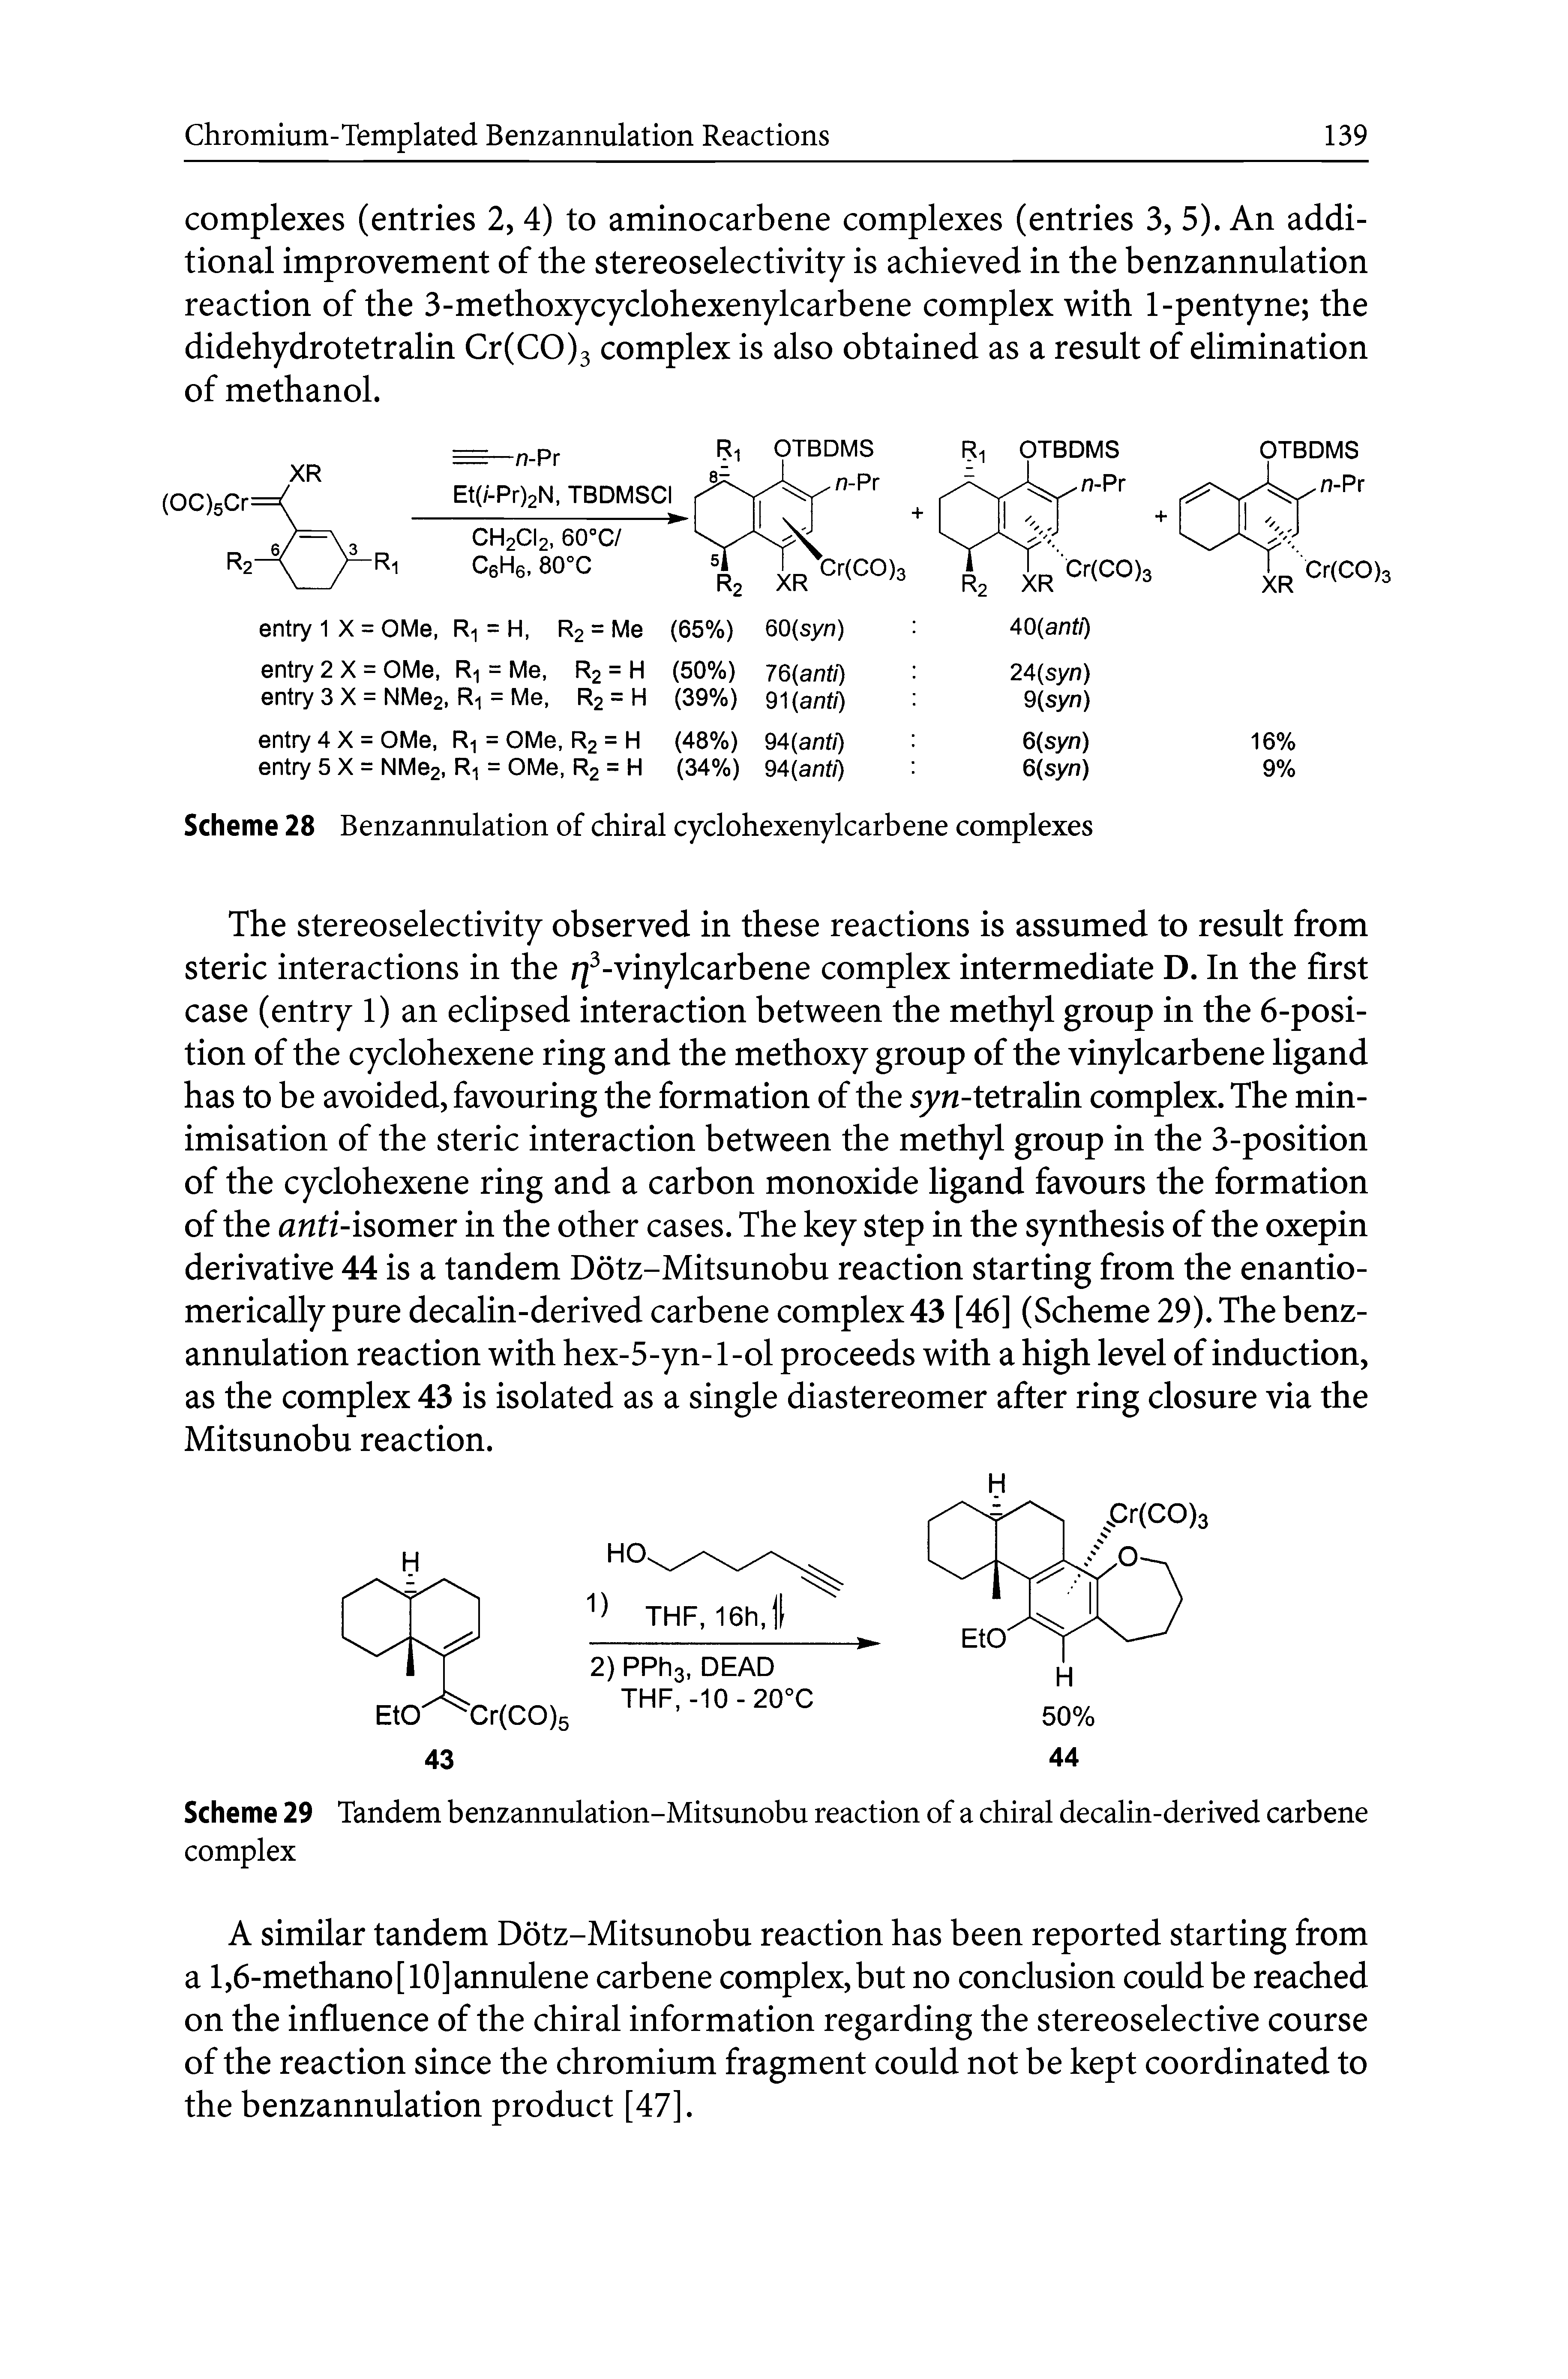 Scheme 29 Tandem benzannulation-Mitsunobu reaction of a chiral decalin-derived carbene complex...